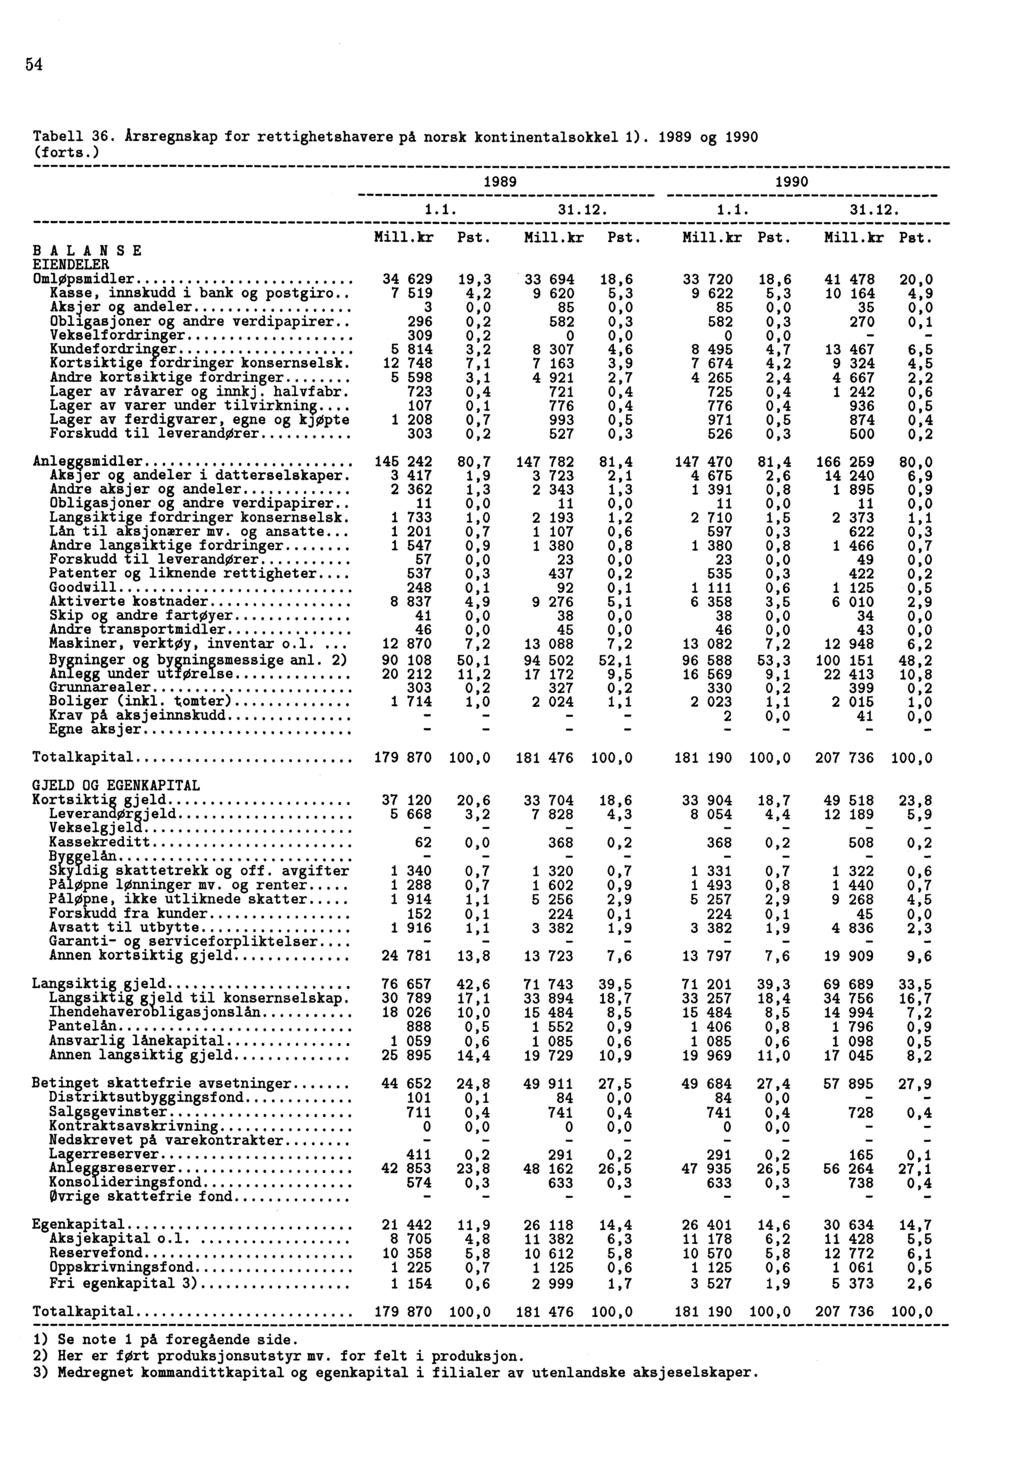 54 Tabell 36. Årsregnskap for rettighetshavere på norsk kontinentalsokkel 1). 1989 og 1990 (forts.) 1989 1990 1.1. 31.12. 1.1. 31.12. Mill.kr Pst.